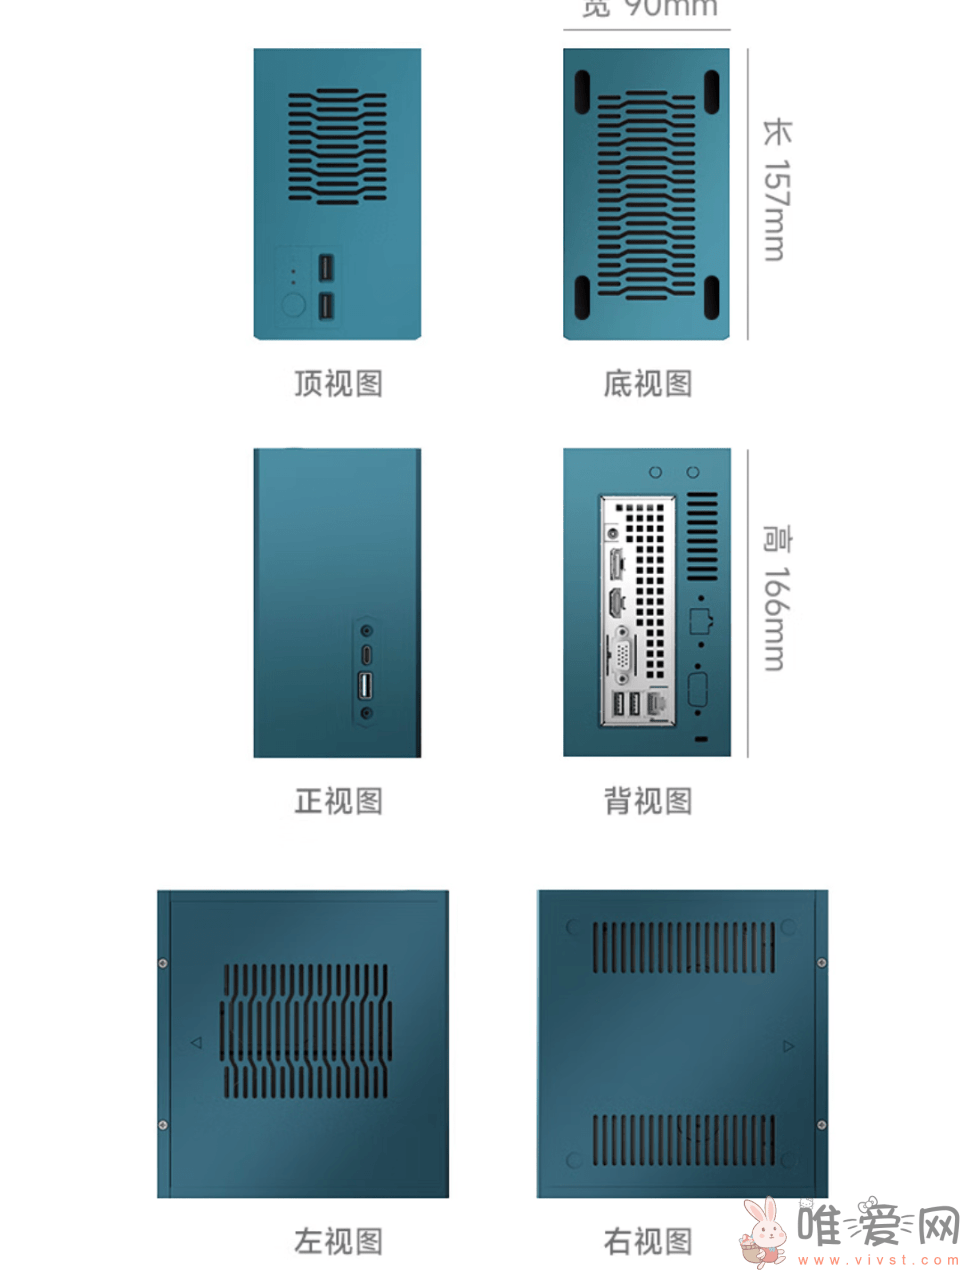 极夜发布秦淮DM系列机箱：5种颜色可选 顶部加70系列风扇支持！